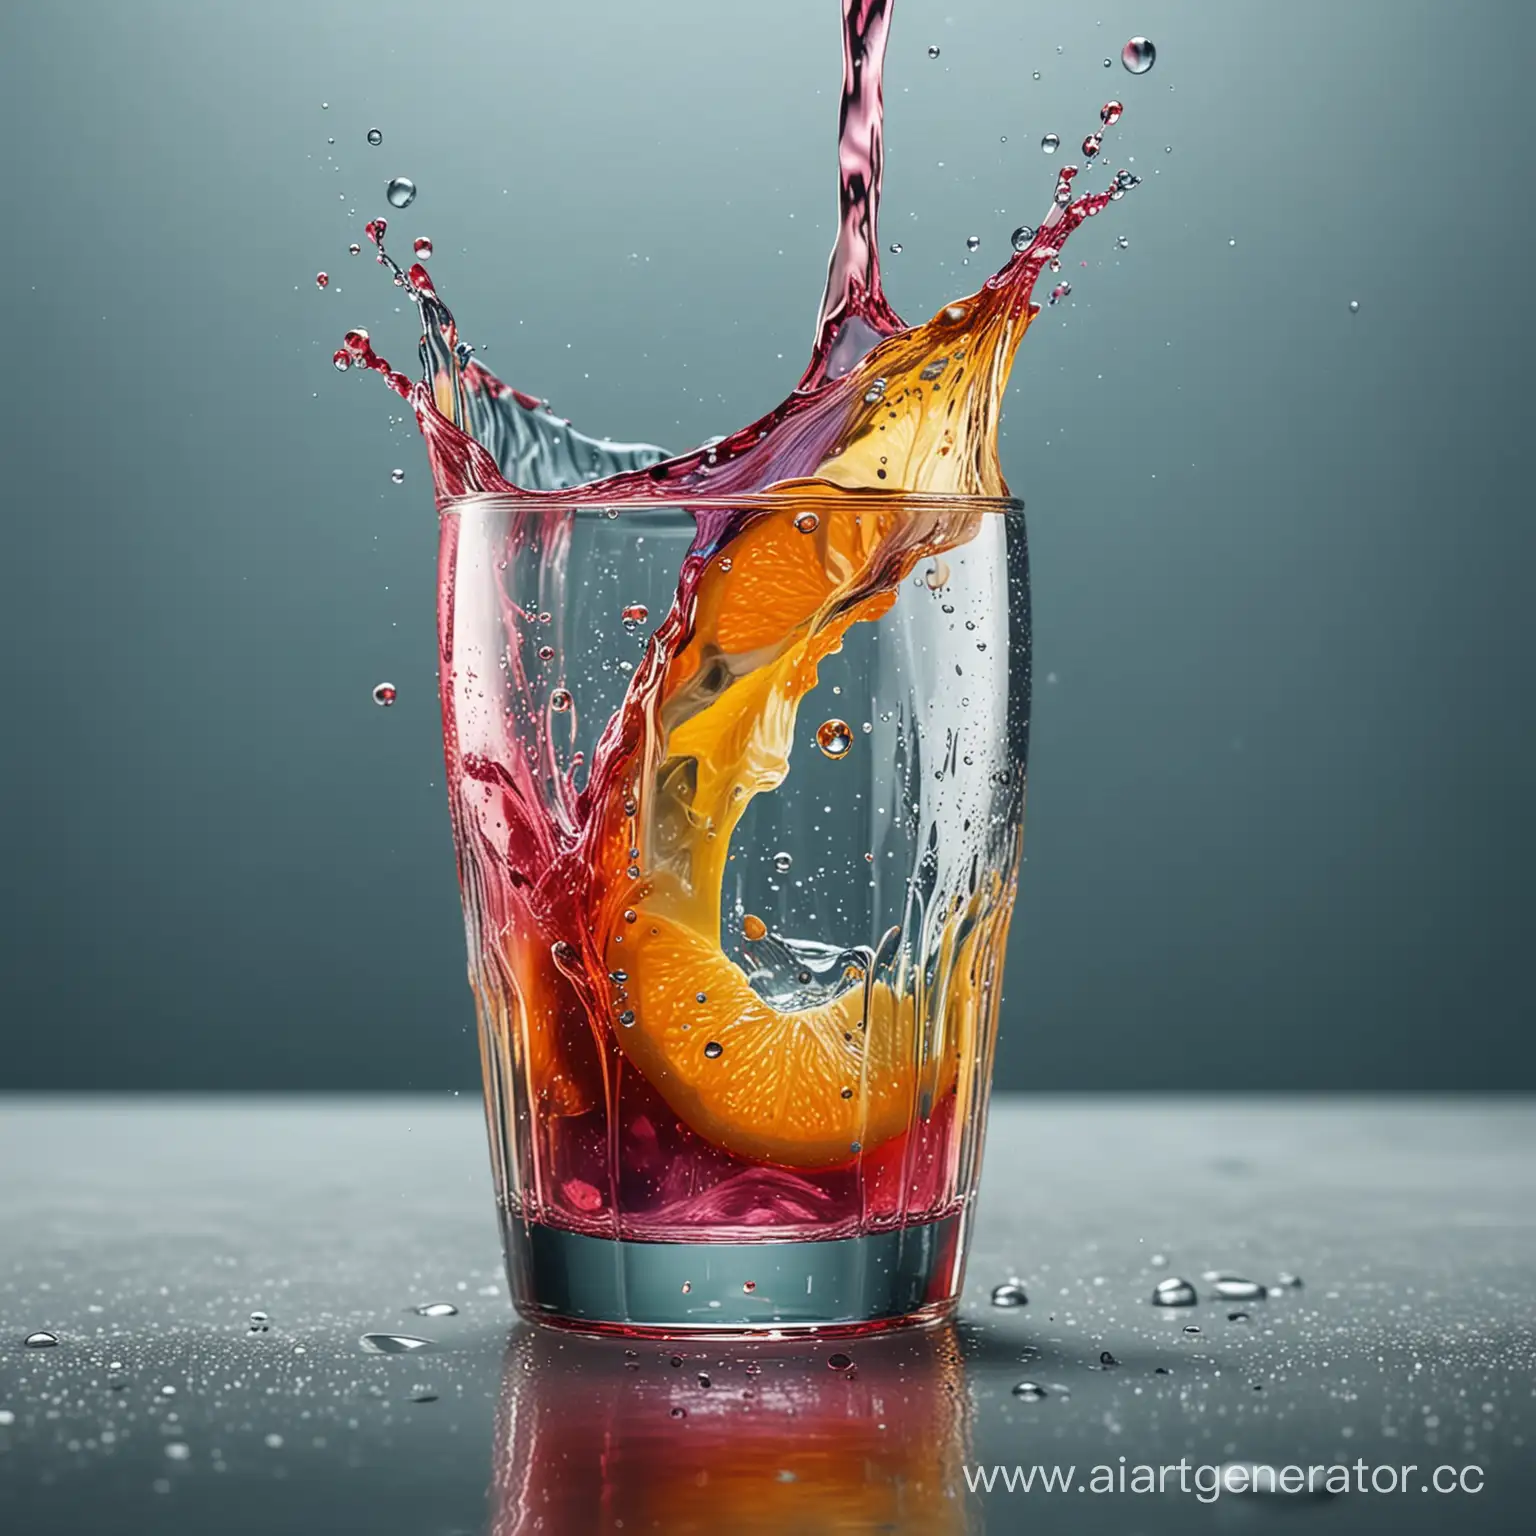 Сочное красочное фото, вода выливается из стакана, 4к изображение, максимально детализированное,